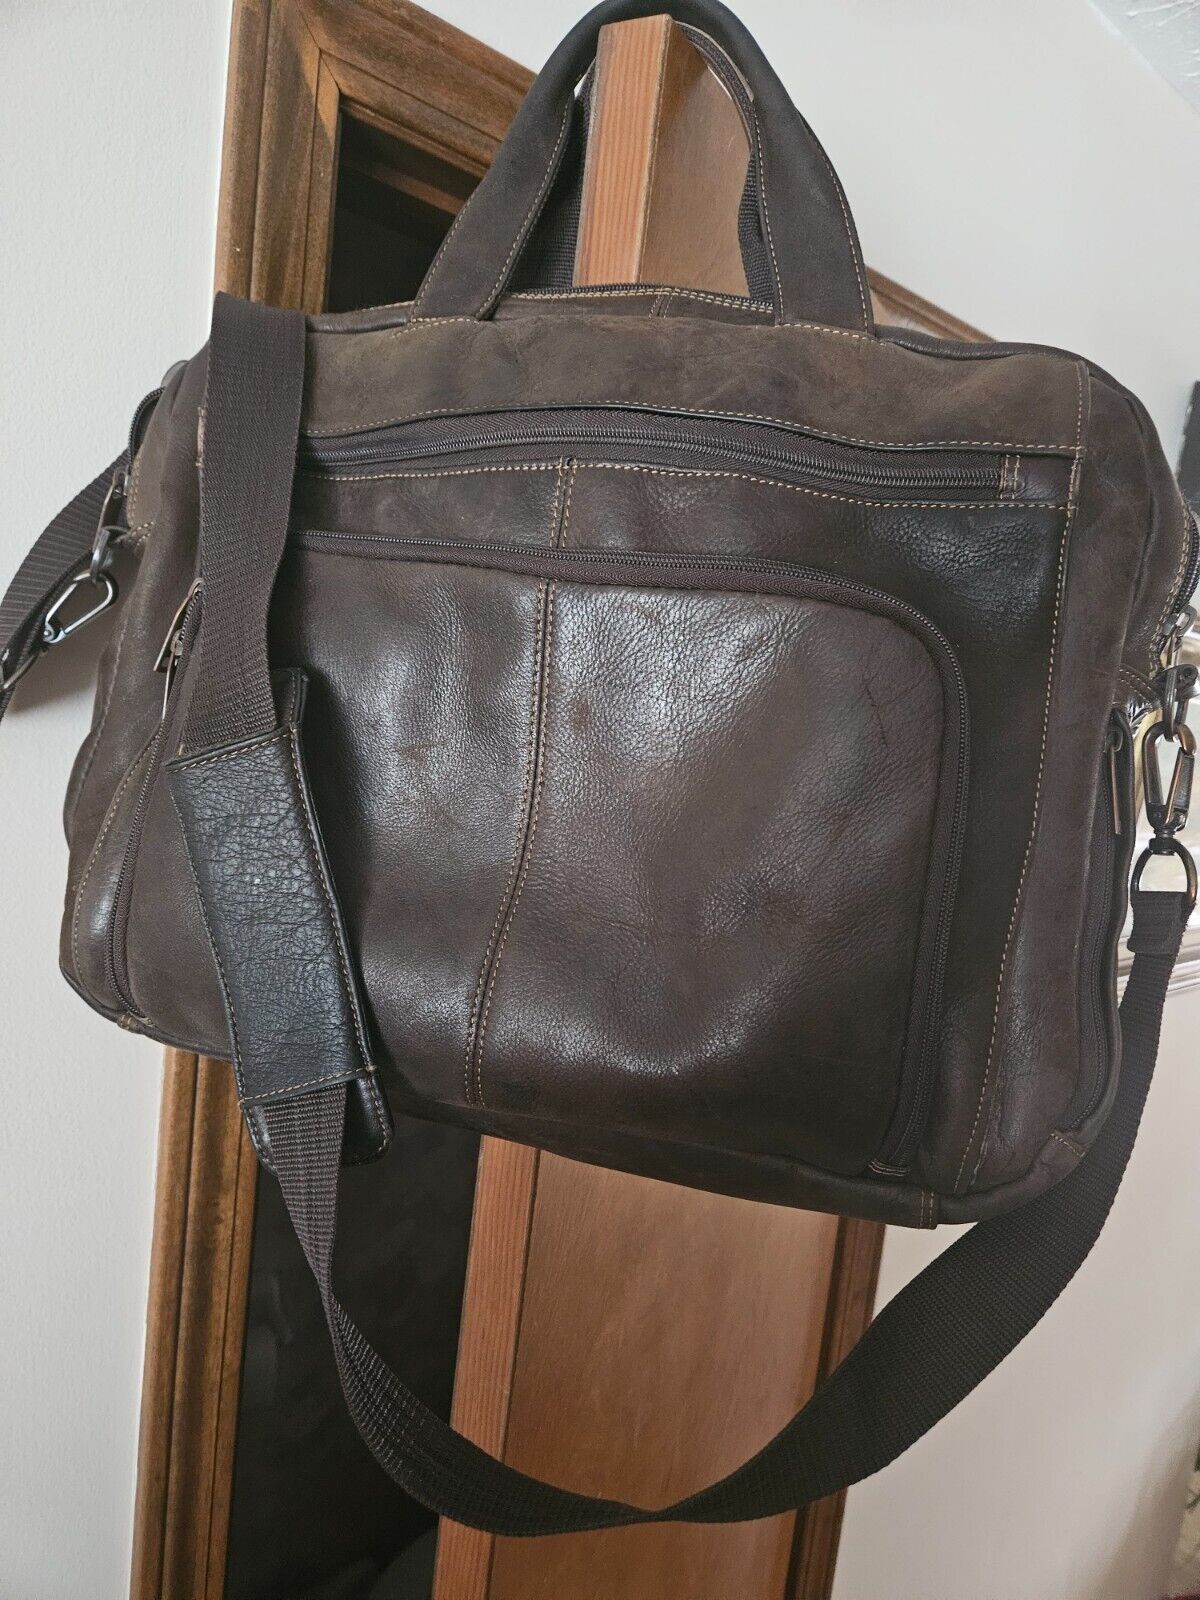 Wilson leather computer/shoulder bag 18